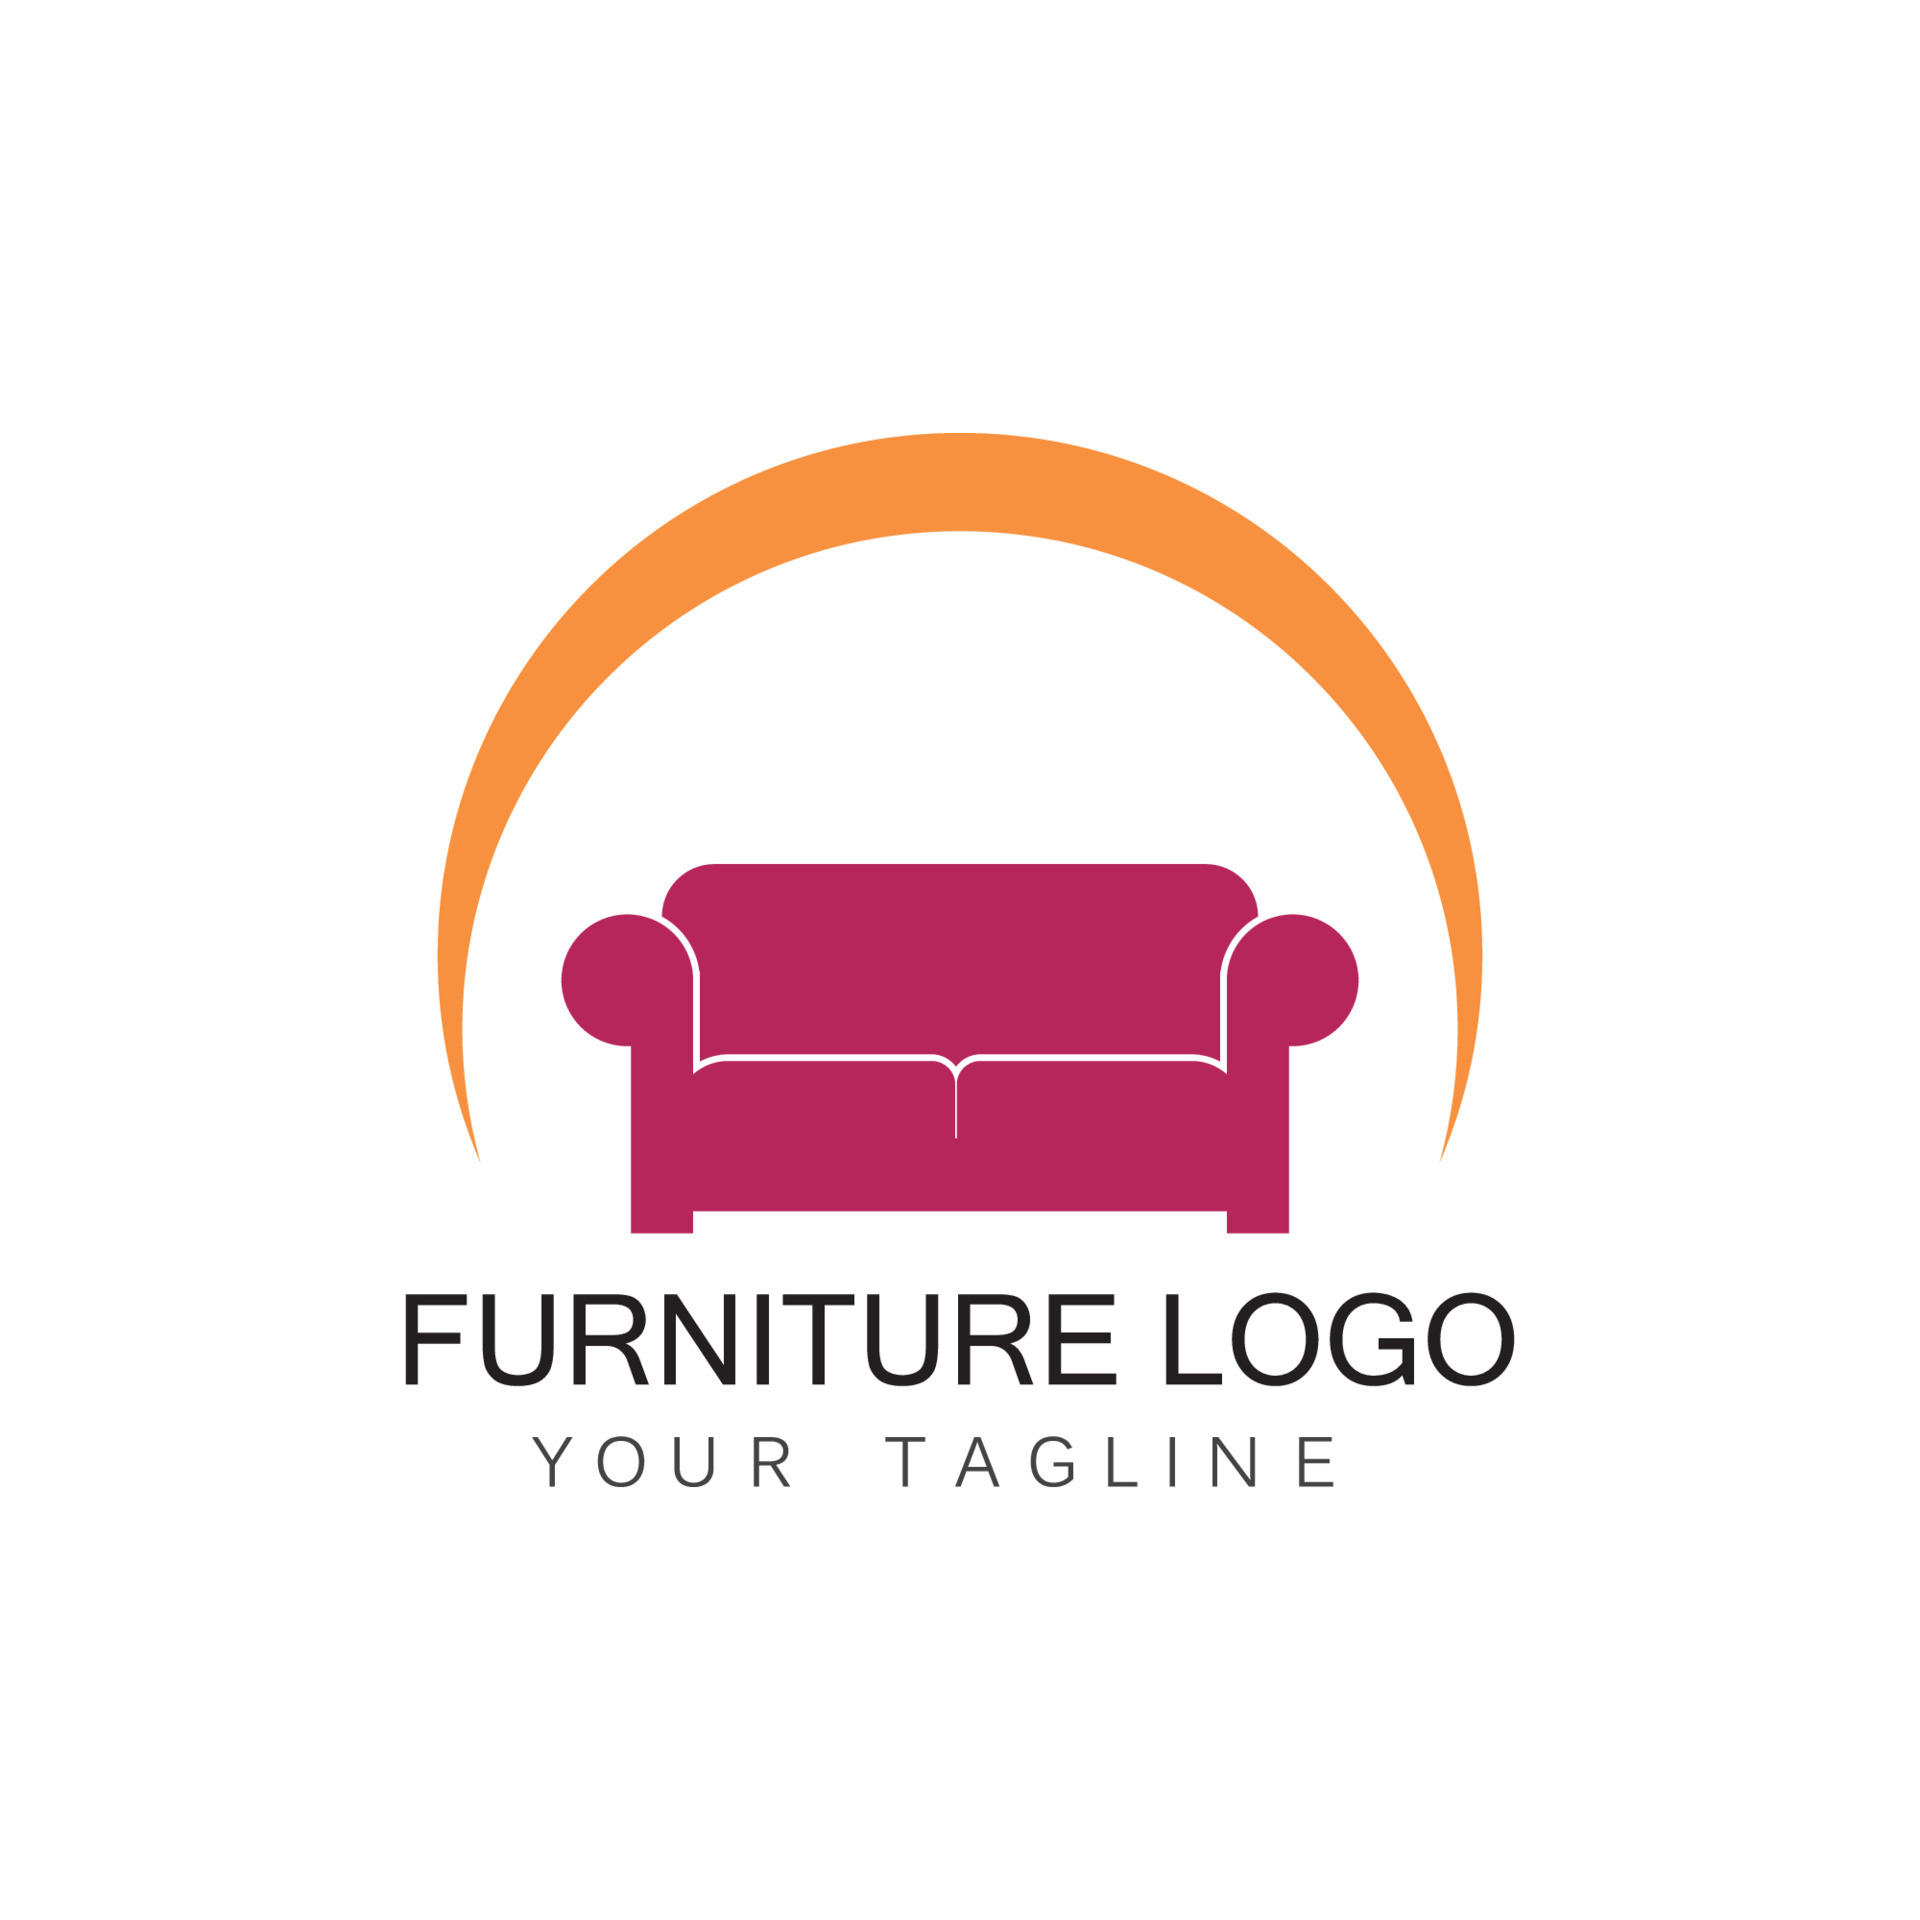 Furniture sofa logo design icon template. Home decor interior ...